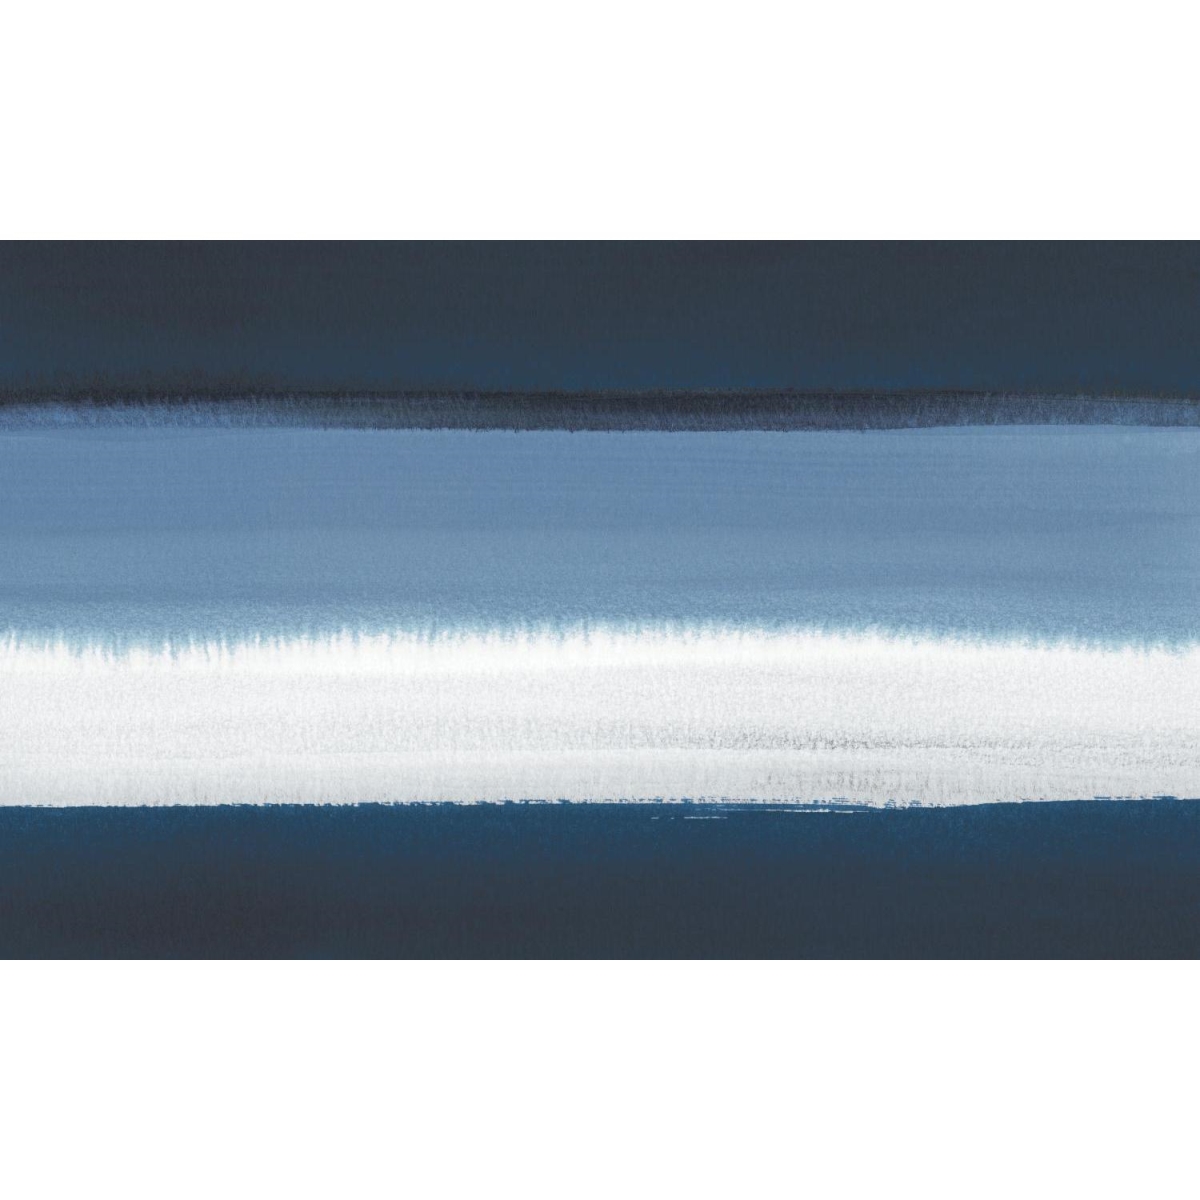 Roommate Rmk11551m Watercolor Horizon Peel & Stick Wallpaper Mural, Blue & White